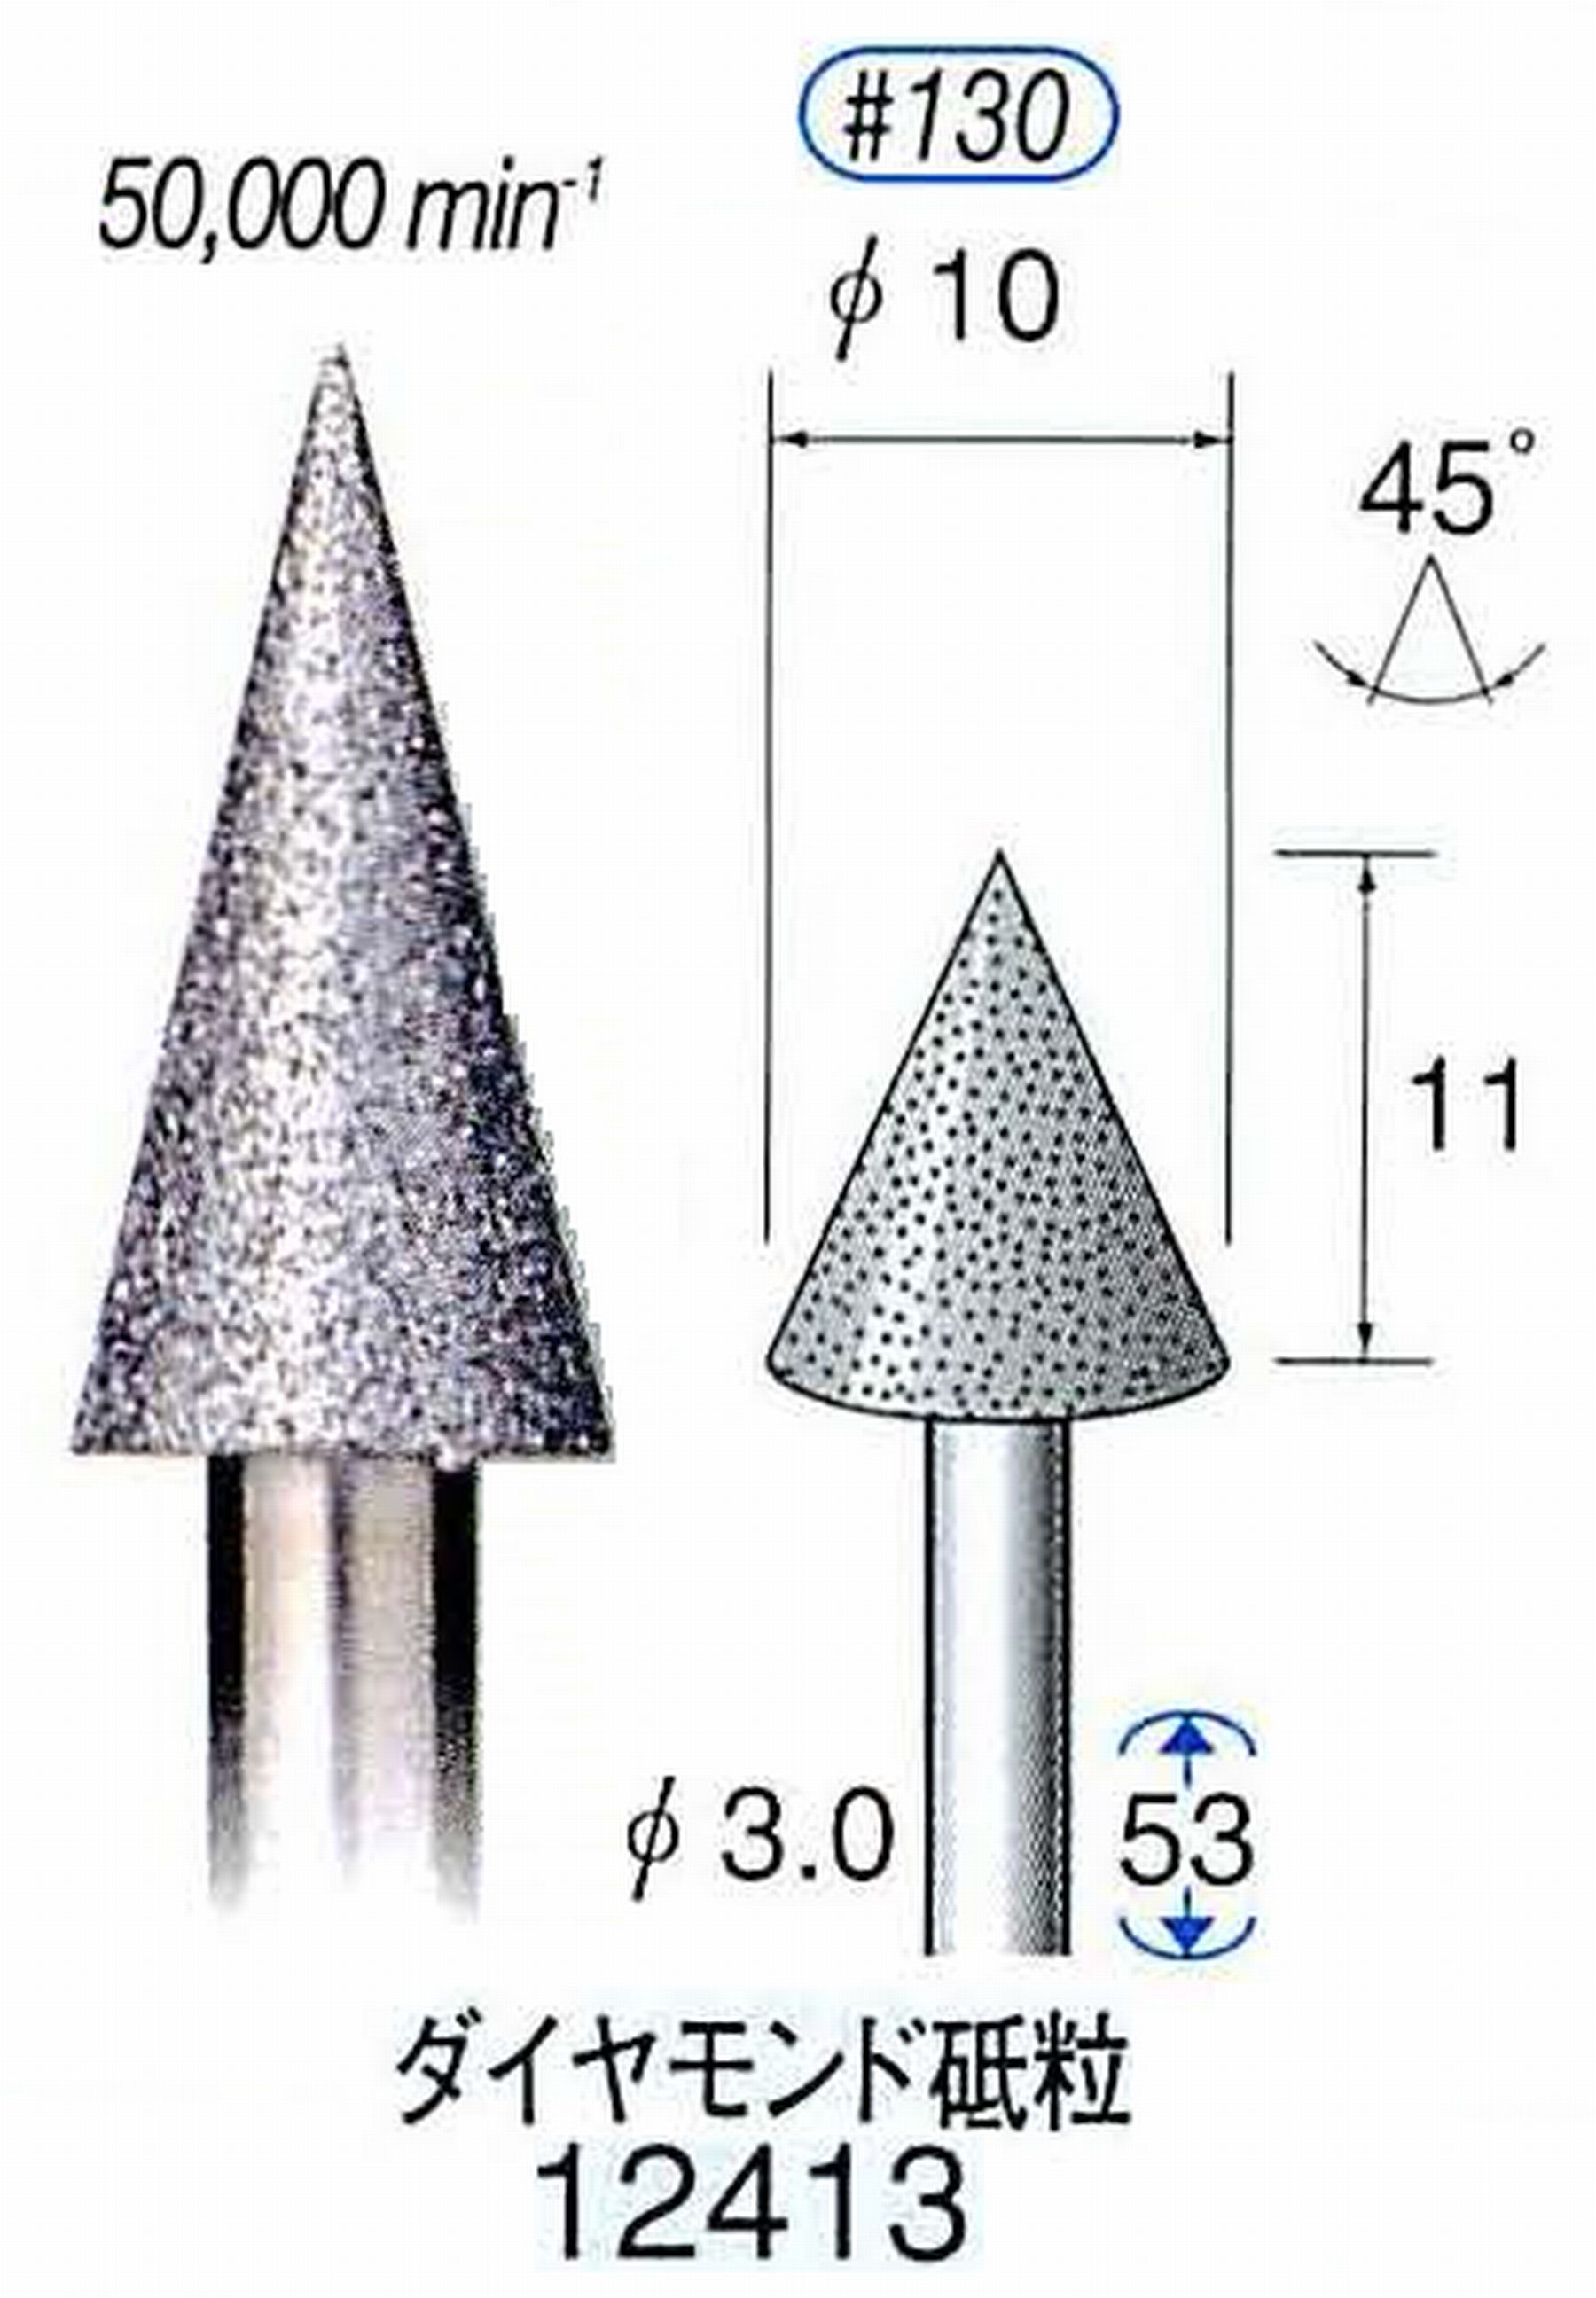 ナカニシ/NAKANISHI 電着ダイヤモンド ダイヤモンド砥粒 軸径(シャンク)φ3.0mm 12413